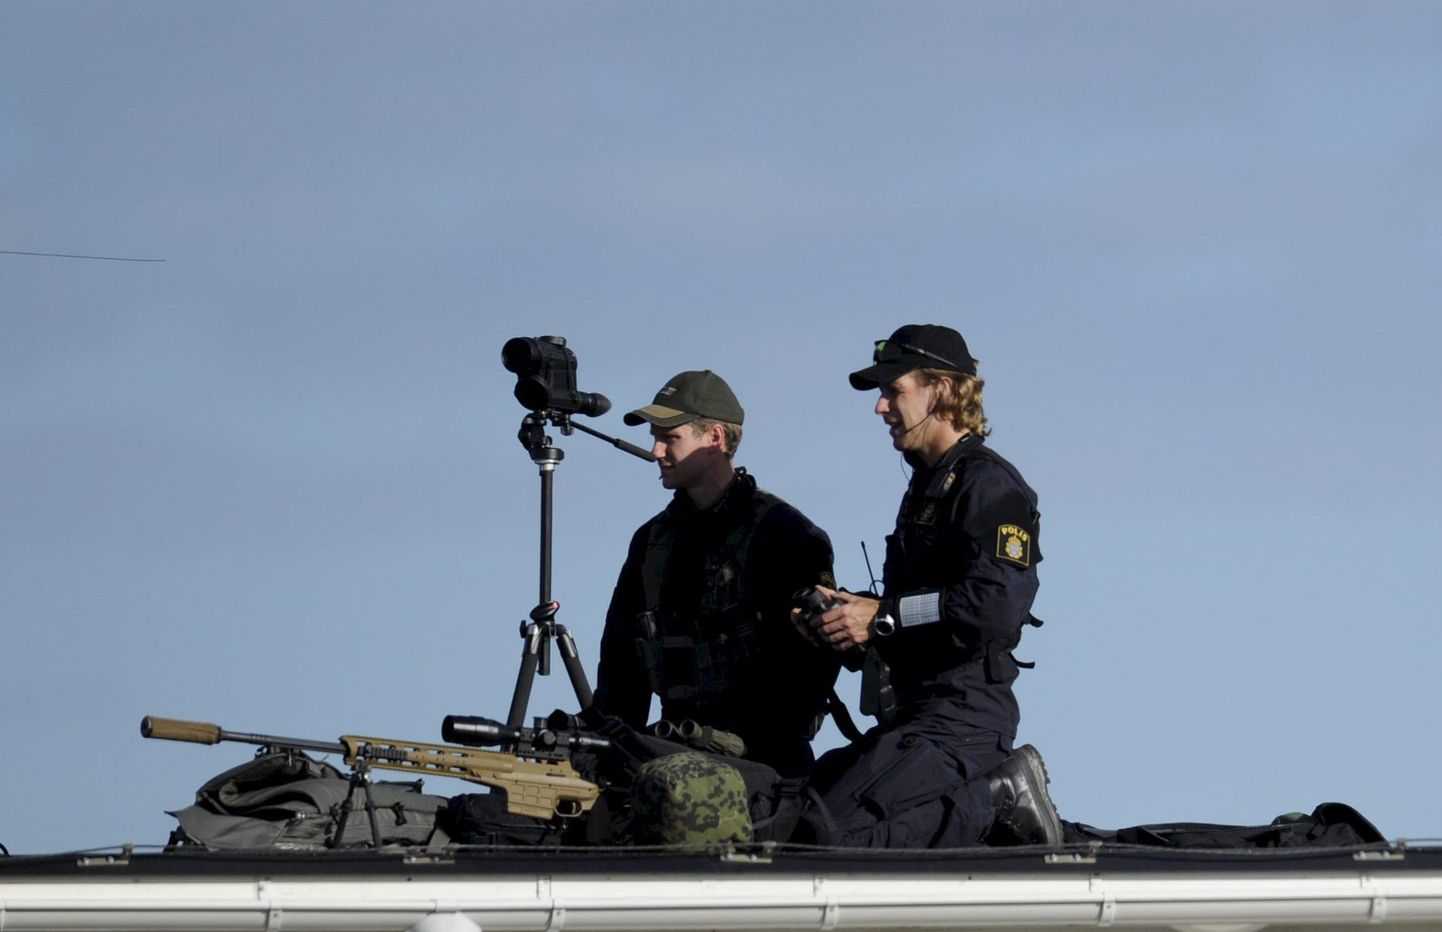 Rootsi politsei snaiperid.